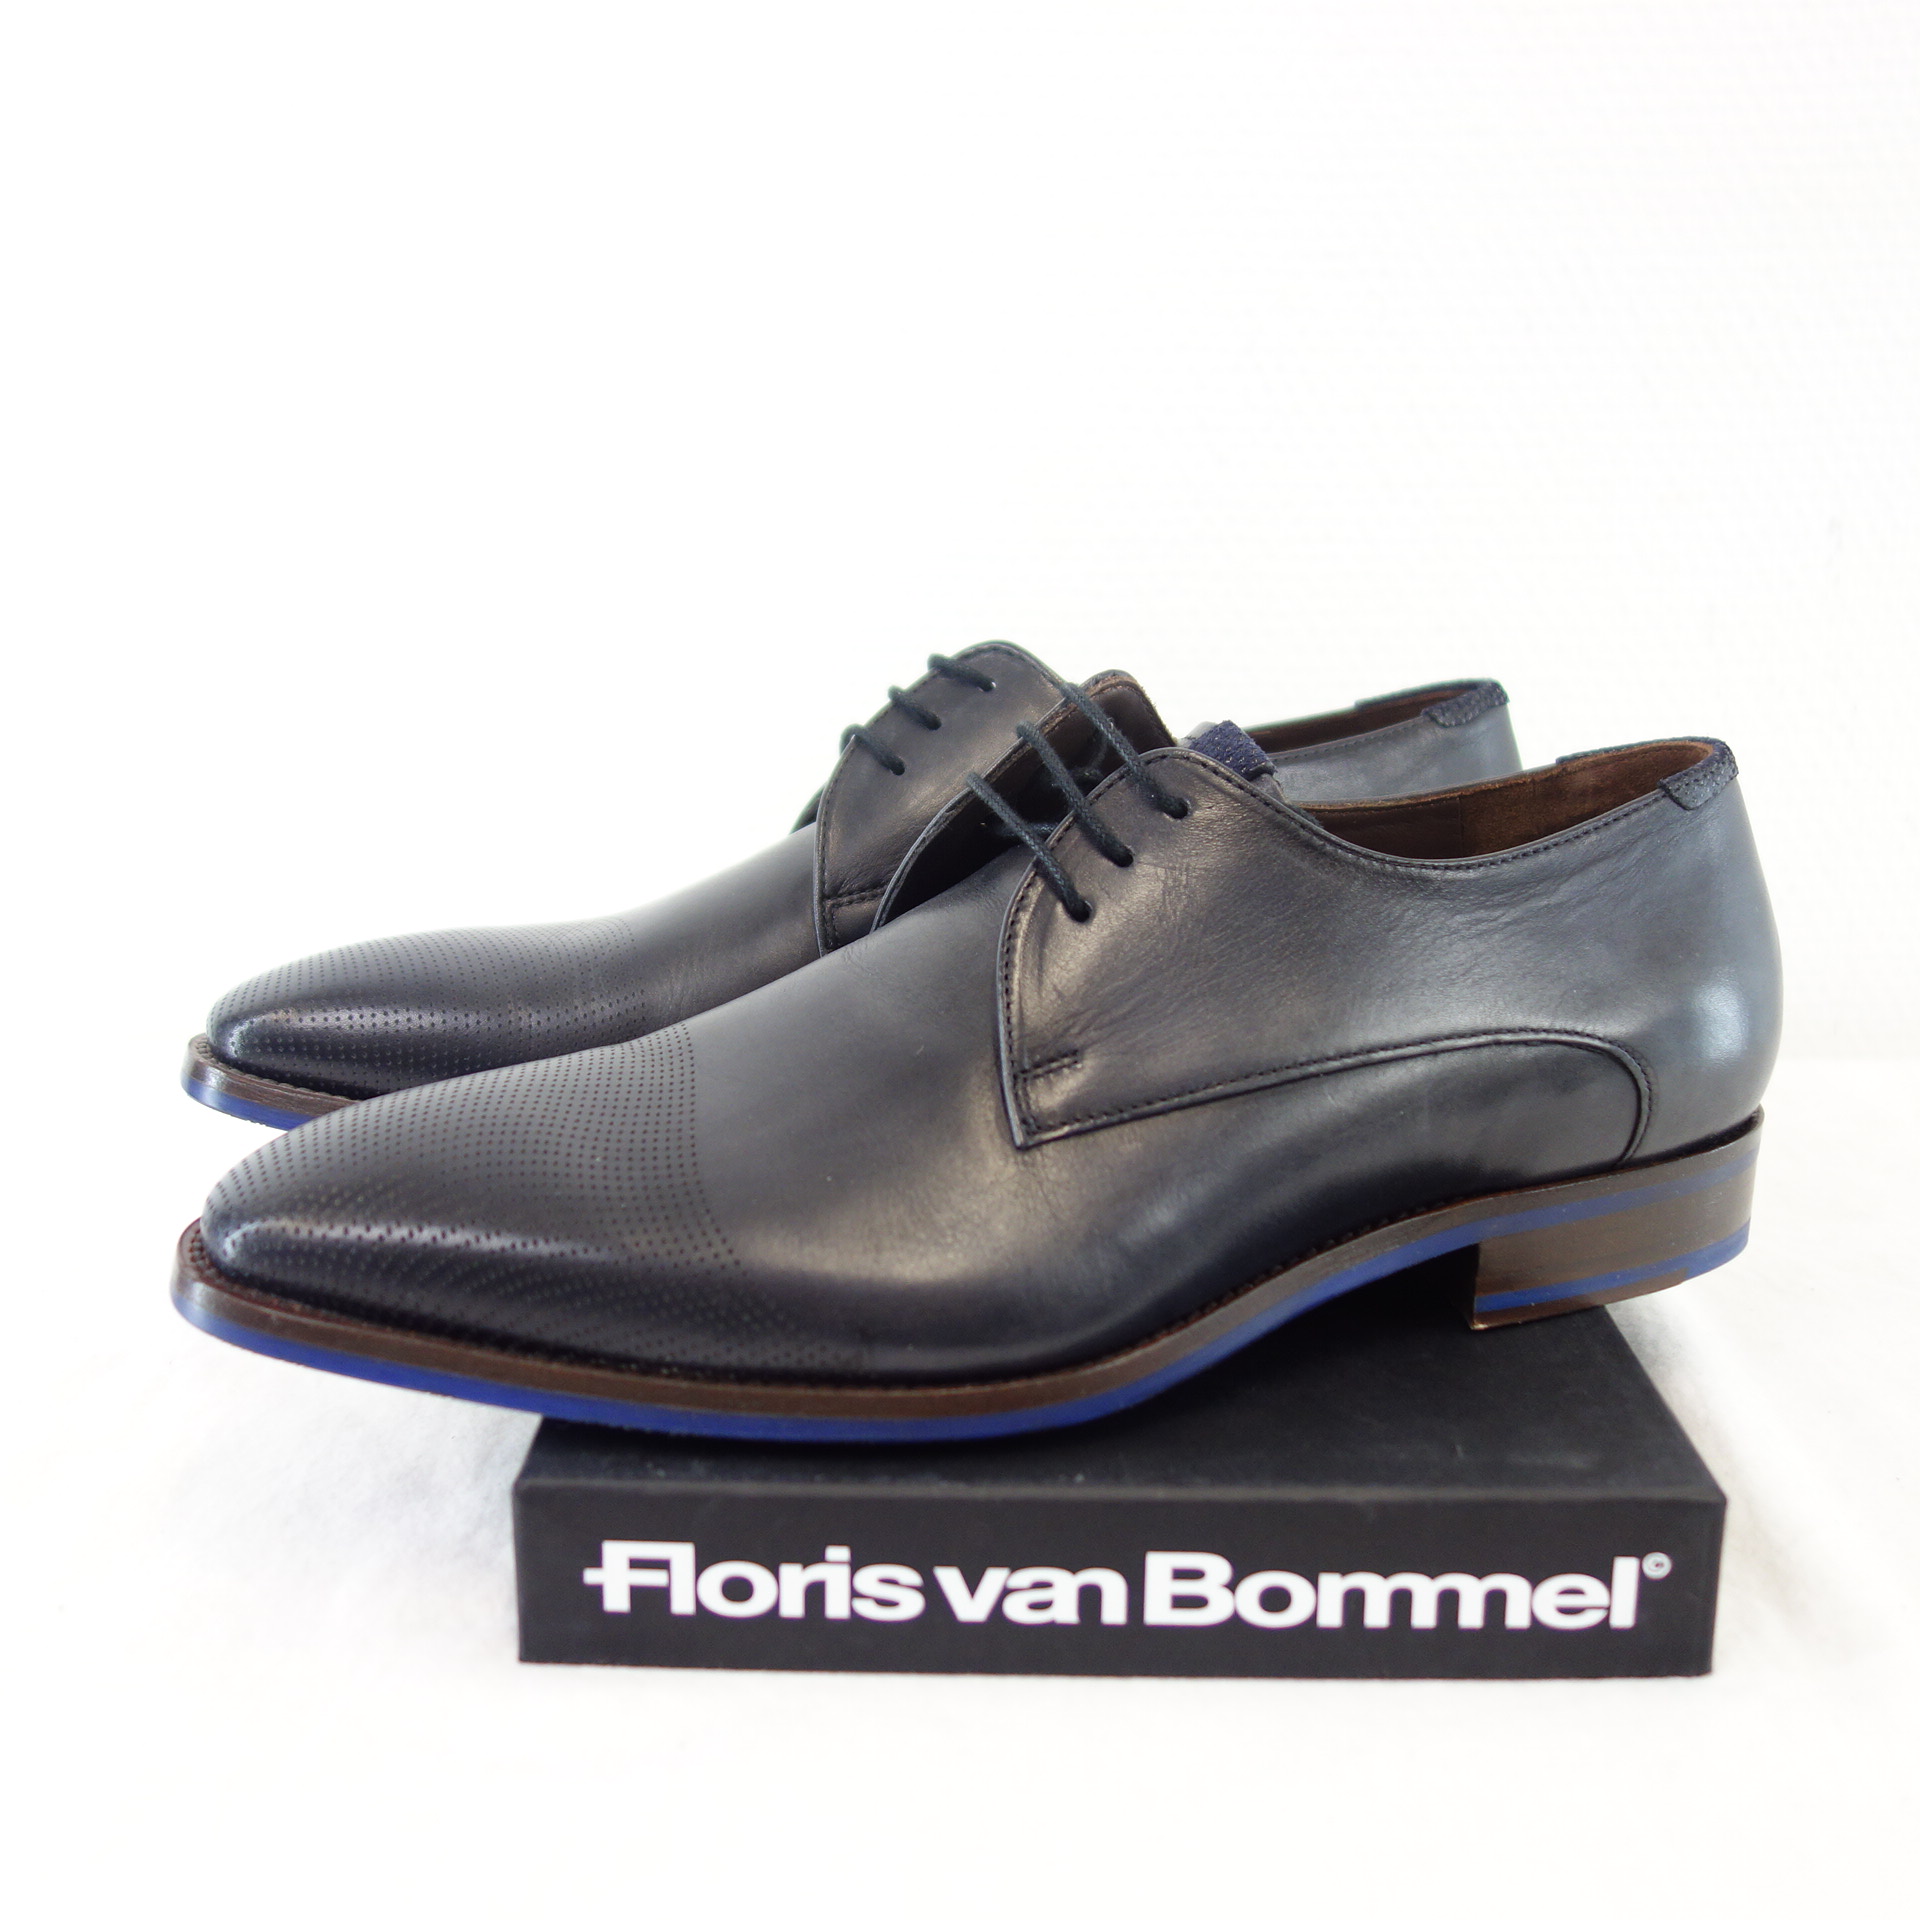 FLORIS VAN BOMMEL Herren Business Schuhe Brogue Schnürer Leder Grau UK 7  EU 40,5